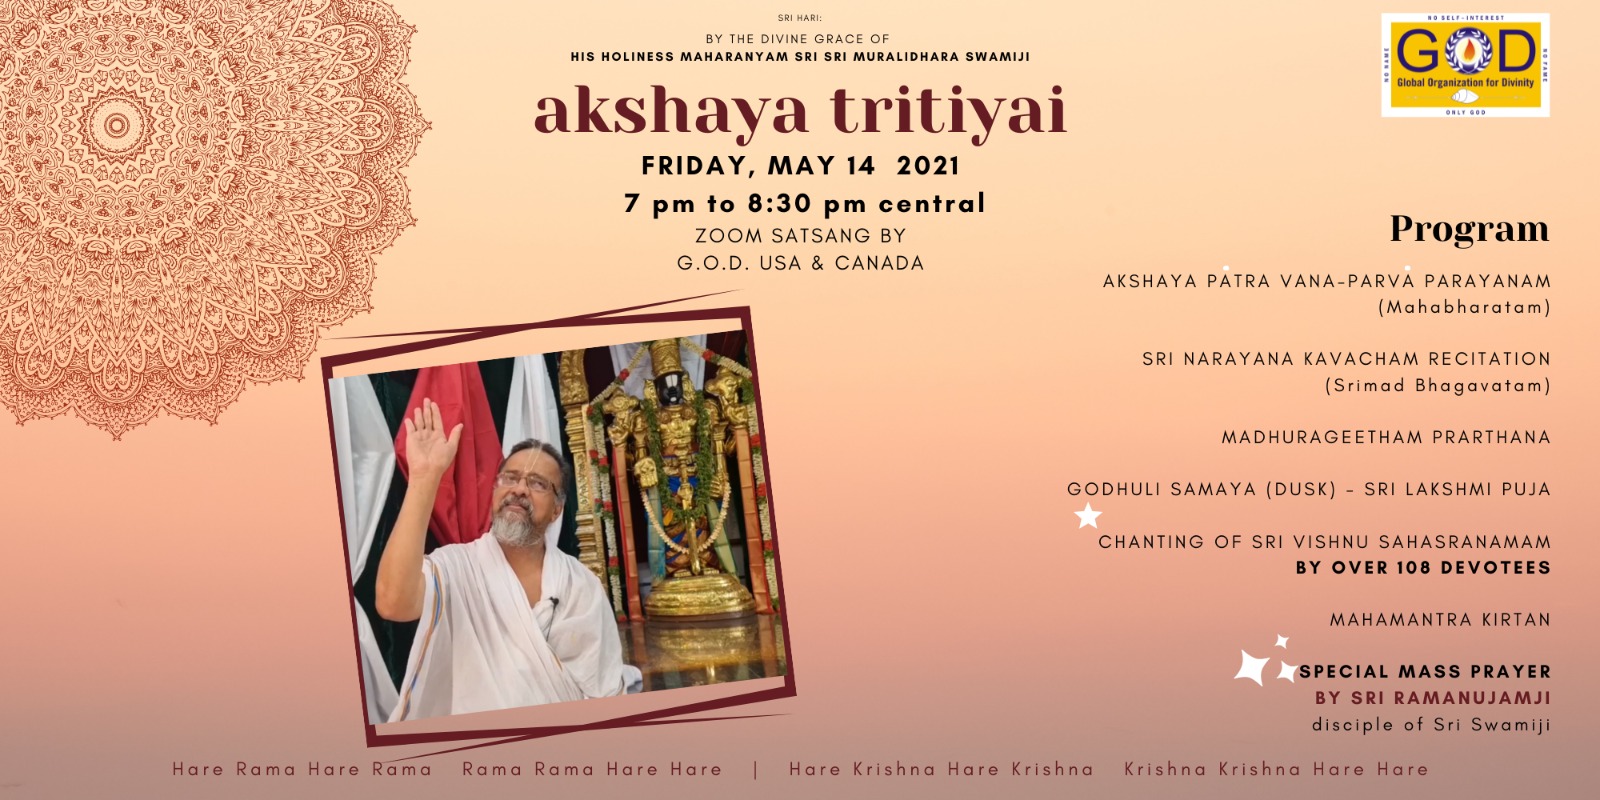 Akshaya Trithiyai 2021 – GOD North America celebrations